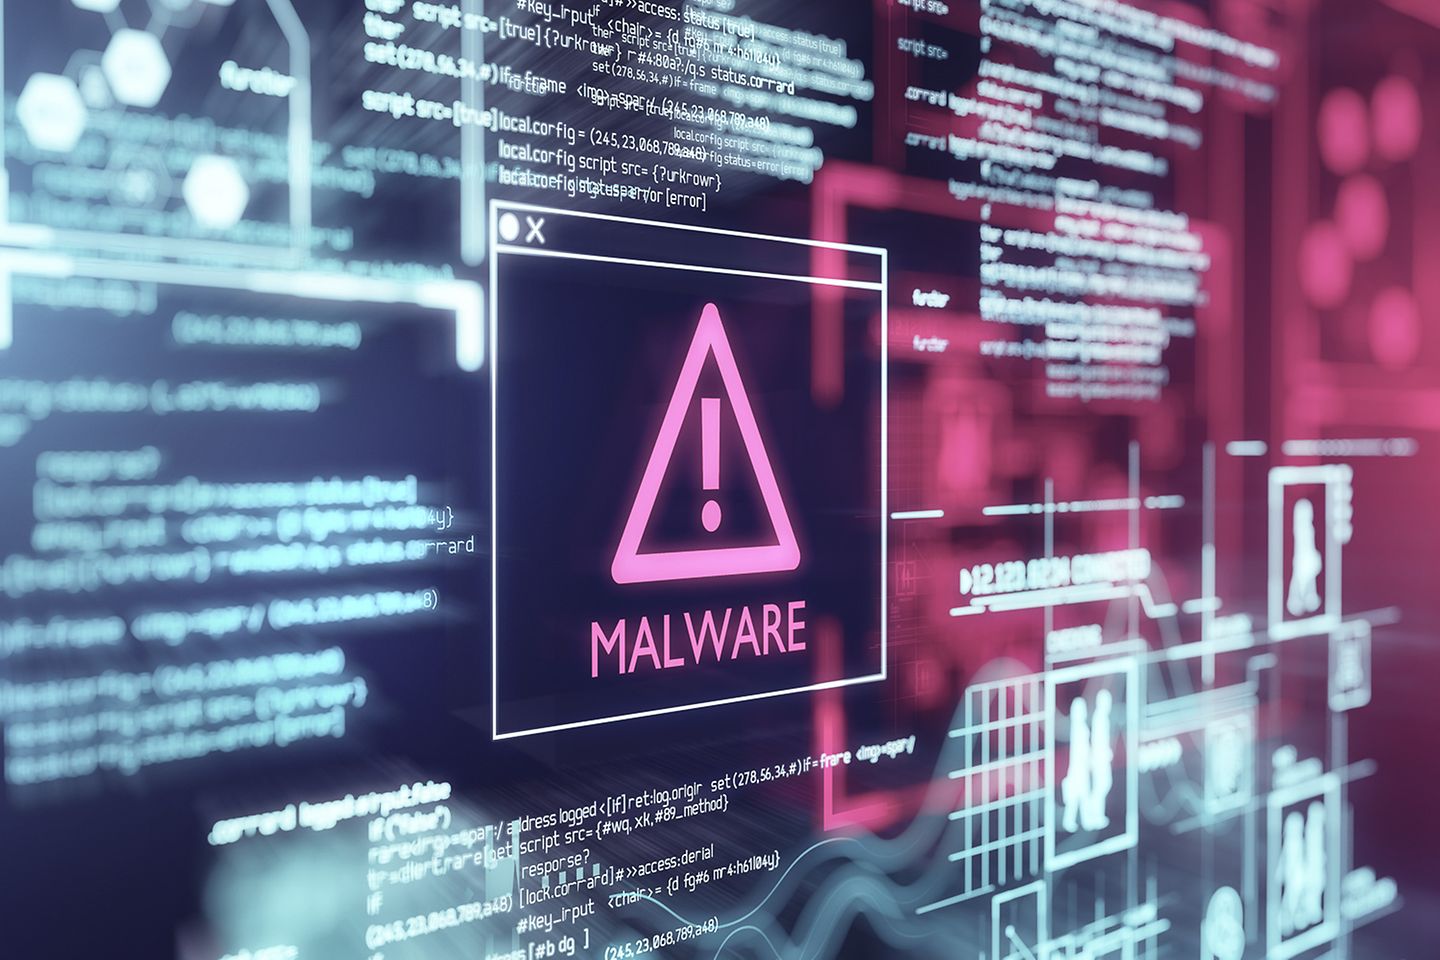 Tela de um computador com mensagem de alerta sobre um malware detectado